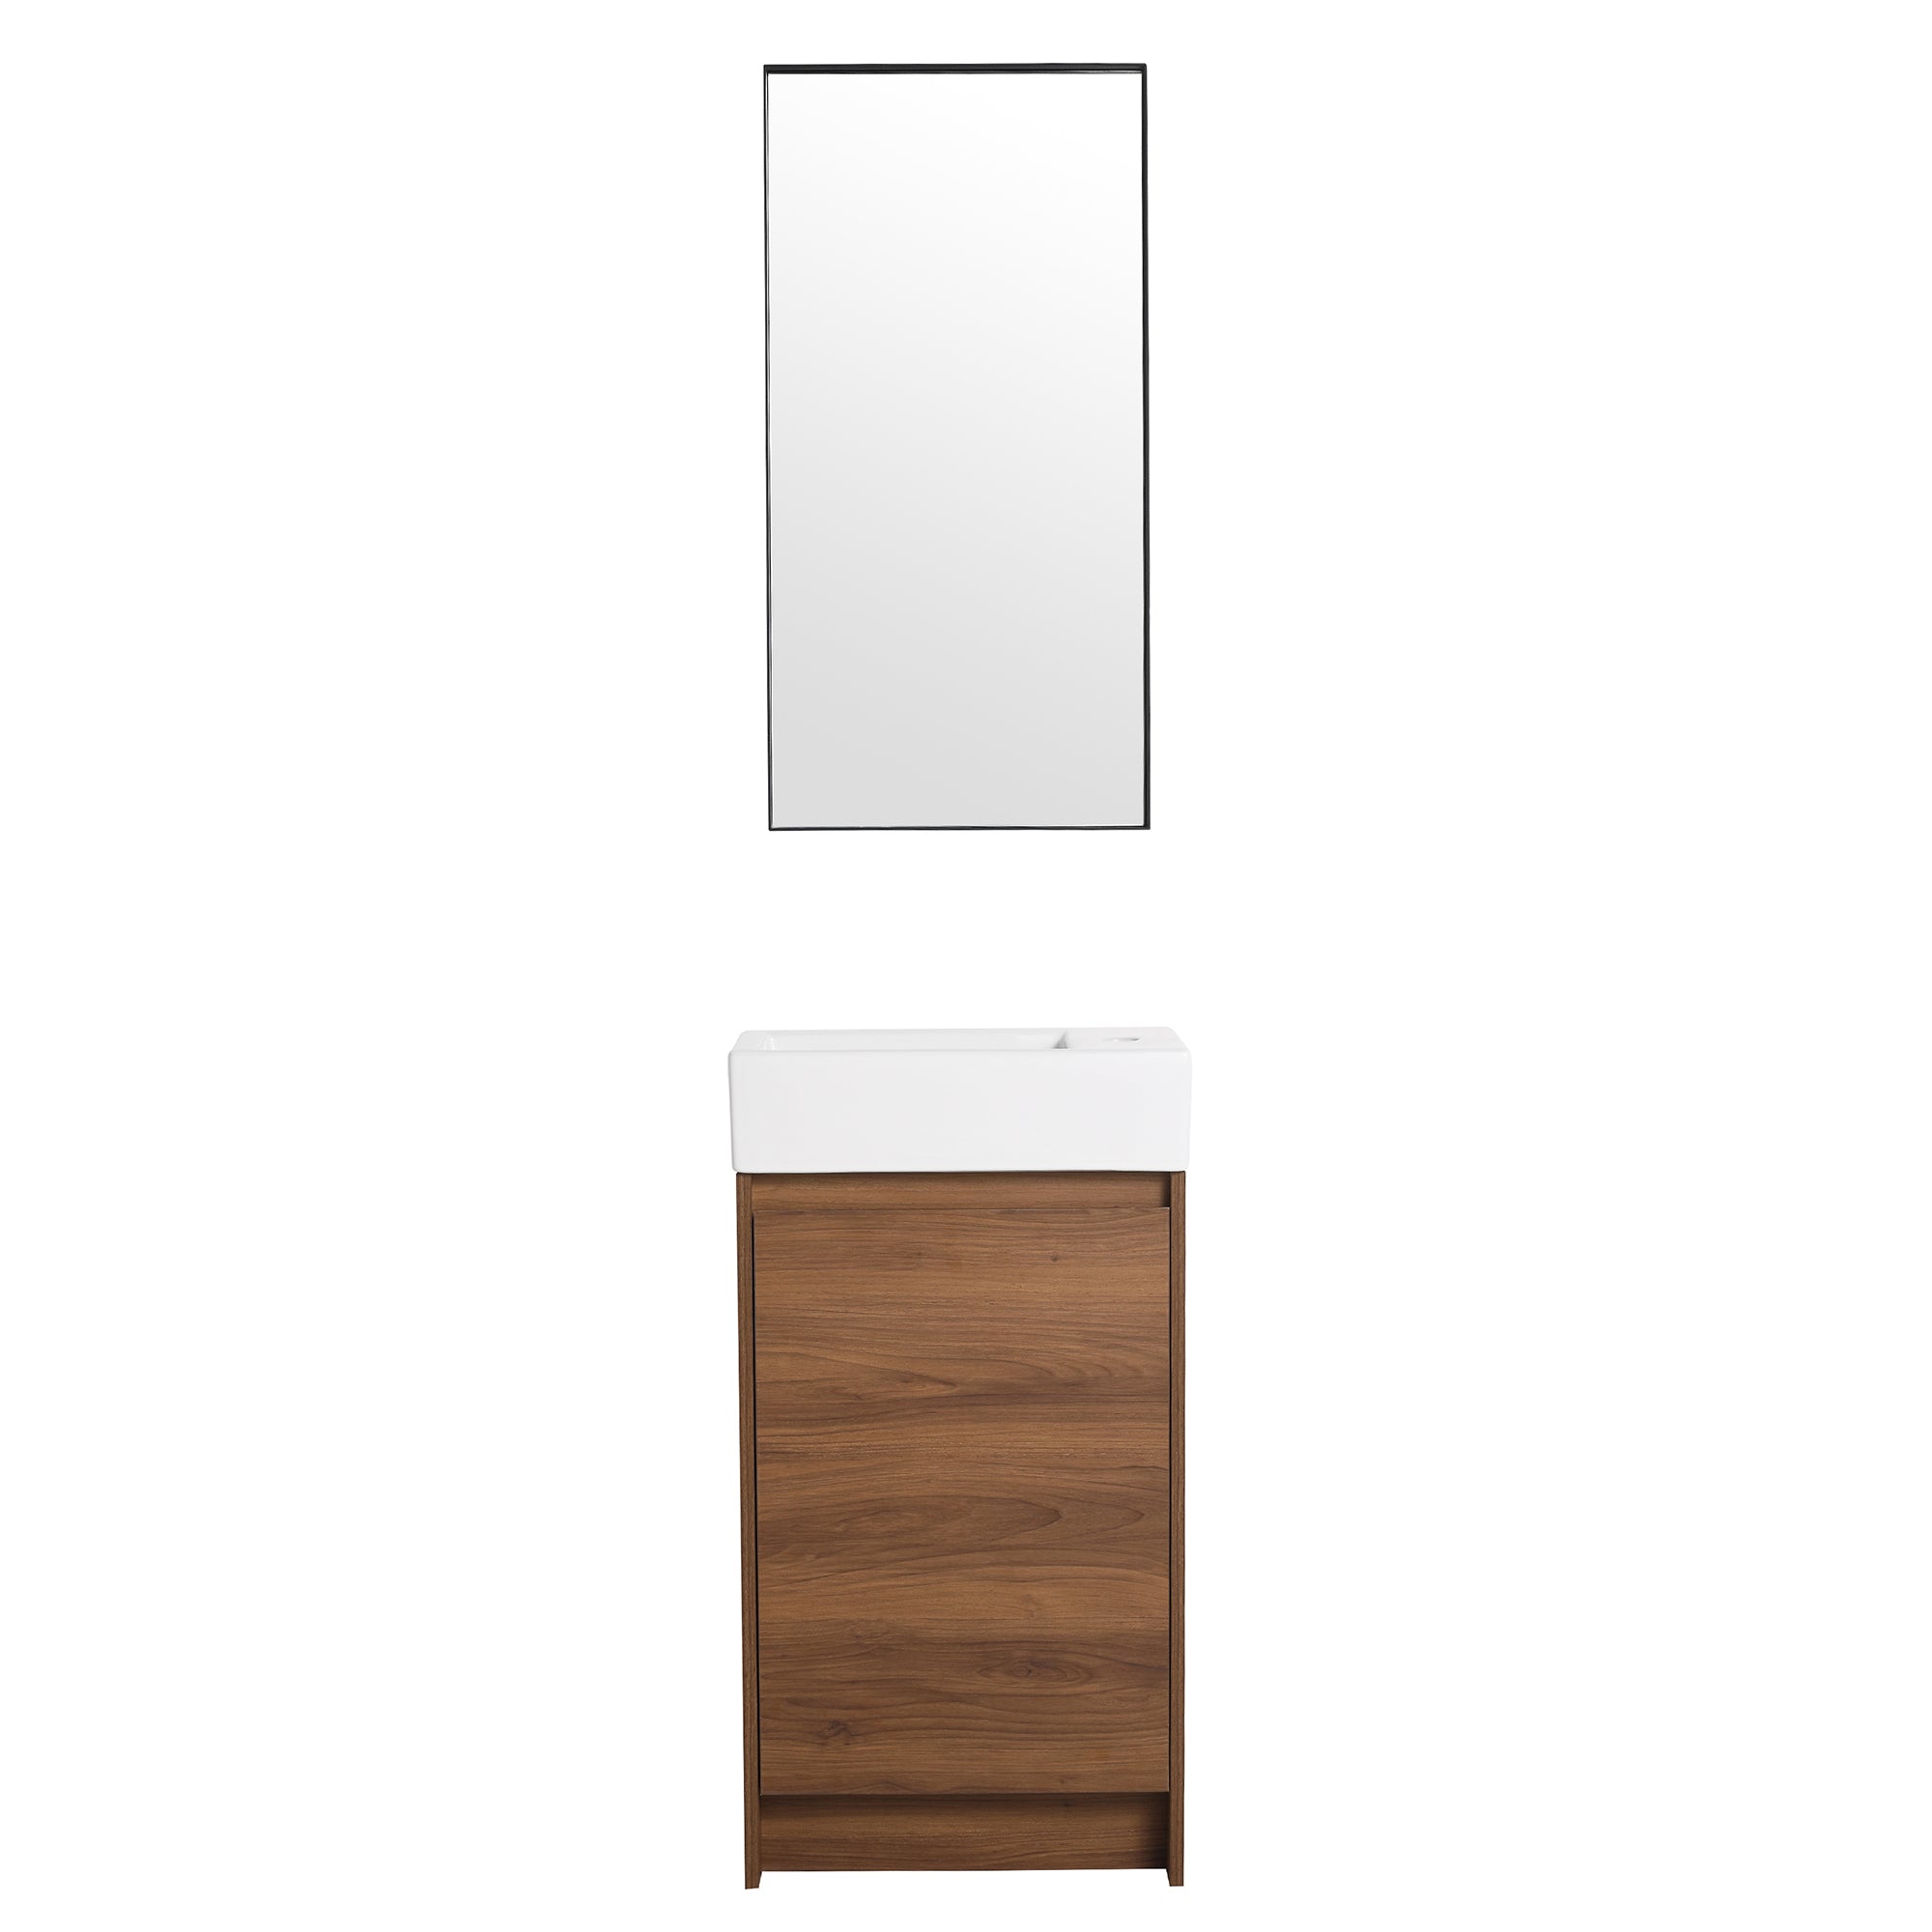 18 in. Plywood Freestanding Bathroom Vanity Set in Brown Ebony with Integrated Ceramic Sink